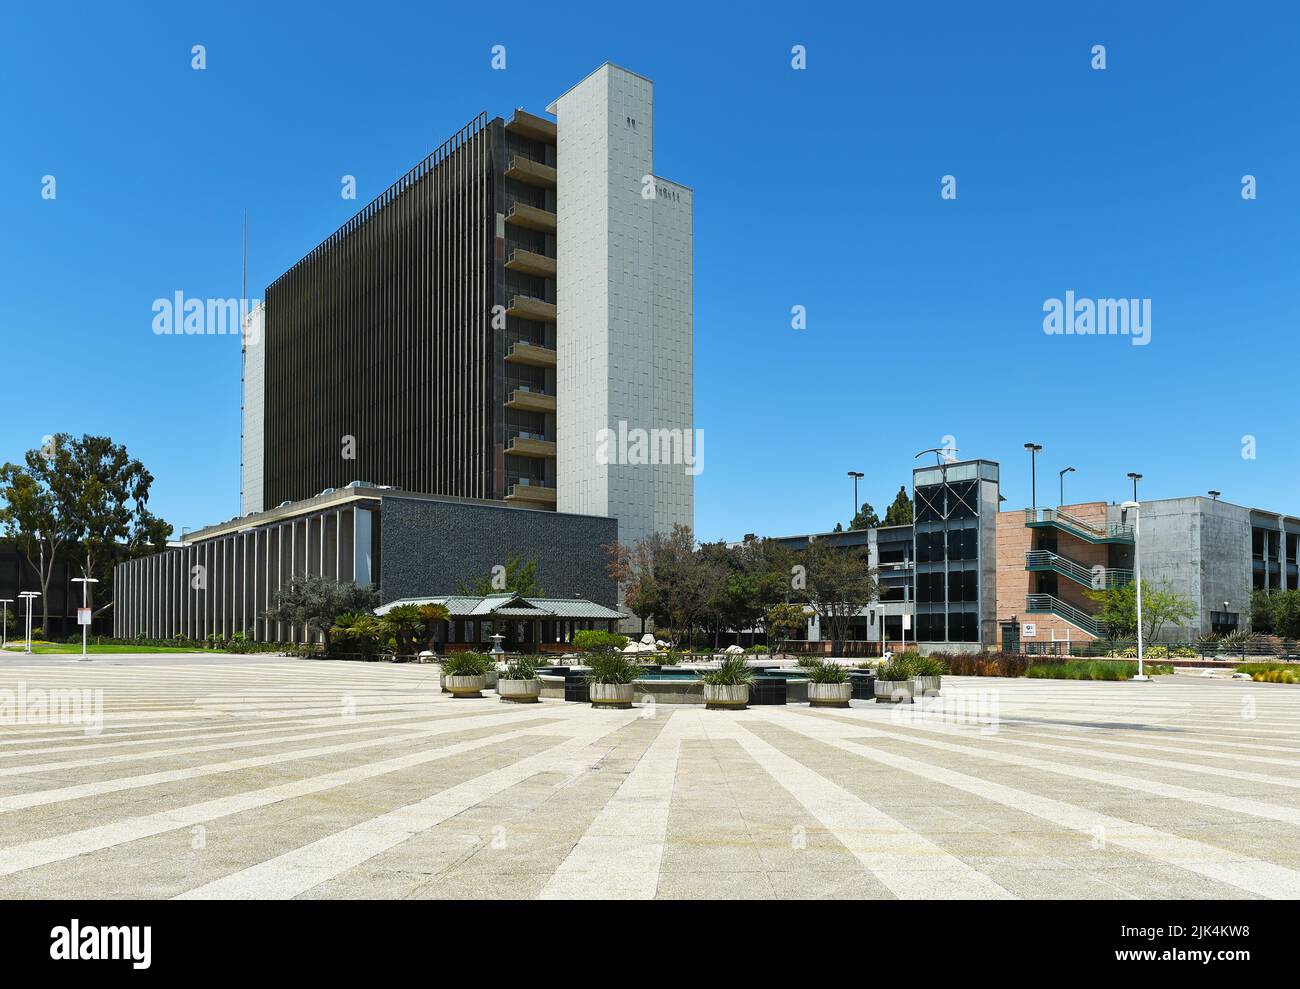 SANTA ANA, KALIFORNIEN - 4 JUL 2022: Orange County Courthouse mit Brunnen und Teegarten im Santa Ana Civic Center. Stockfoto